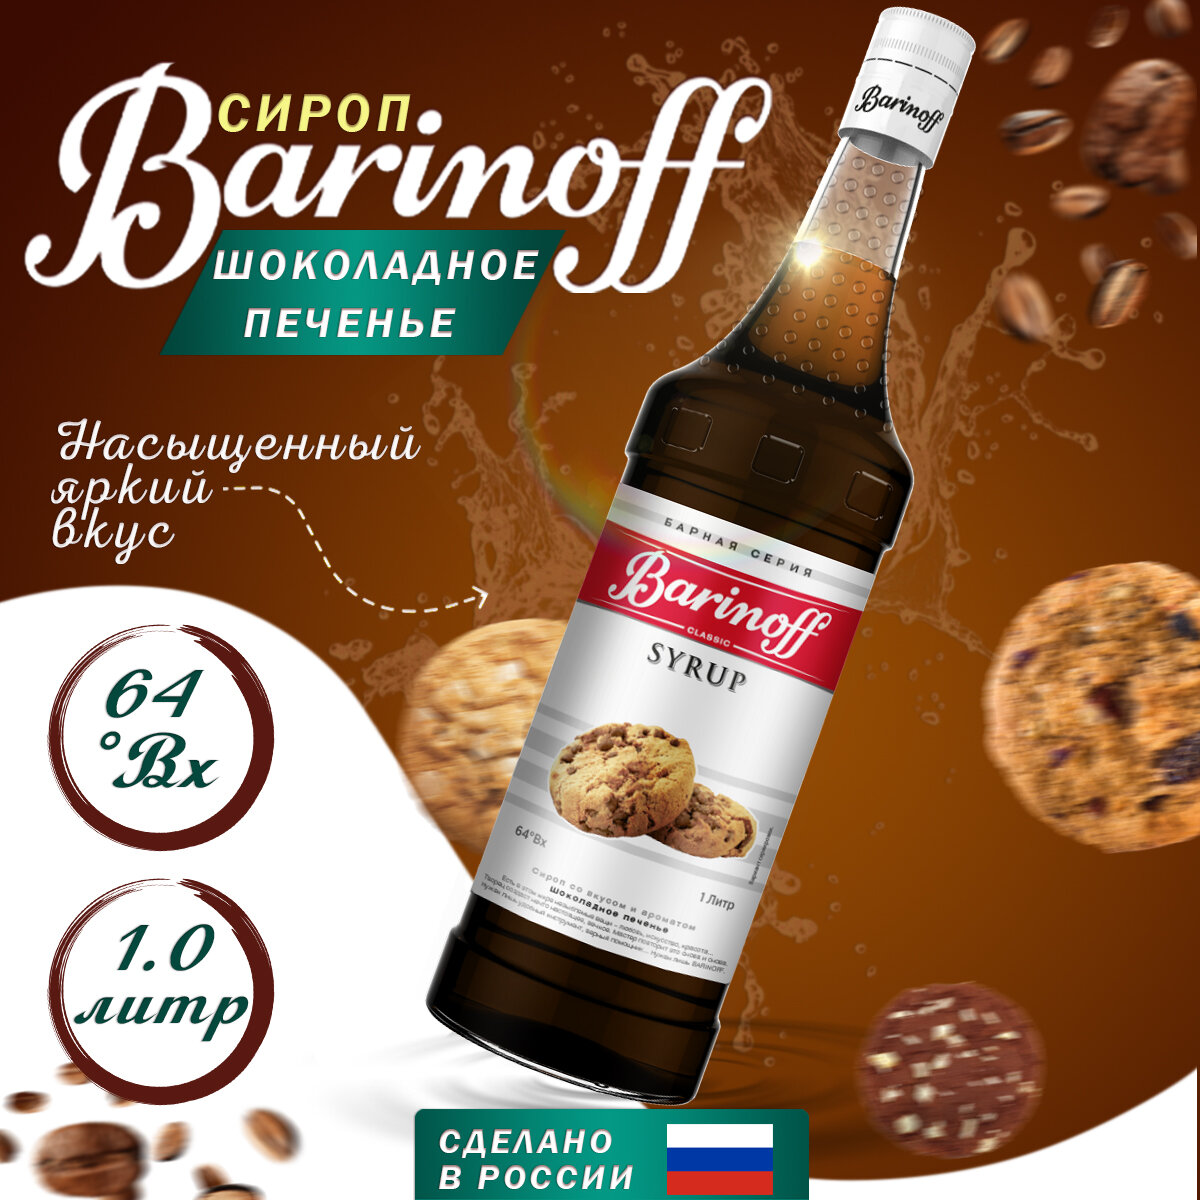 Сироп Barinoff Шоколадное печенье (для кофе, коктейлей, десертов, лимонада и мороженого), 1л